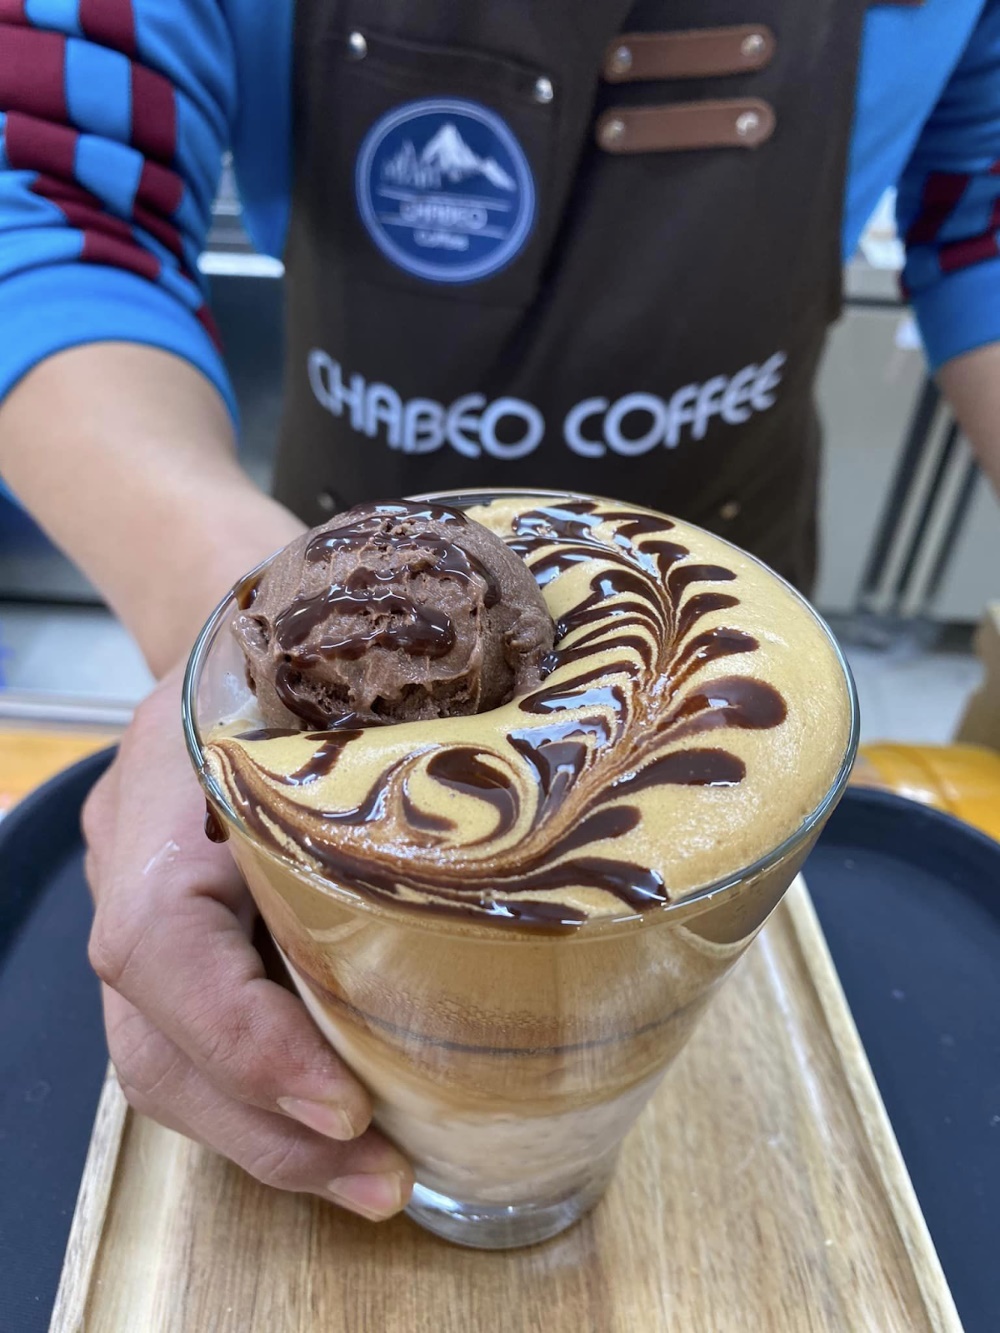 View “triệu đô" tại Chabeo Coffee